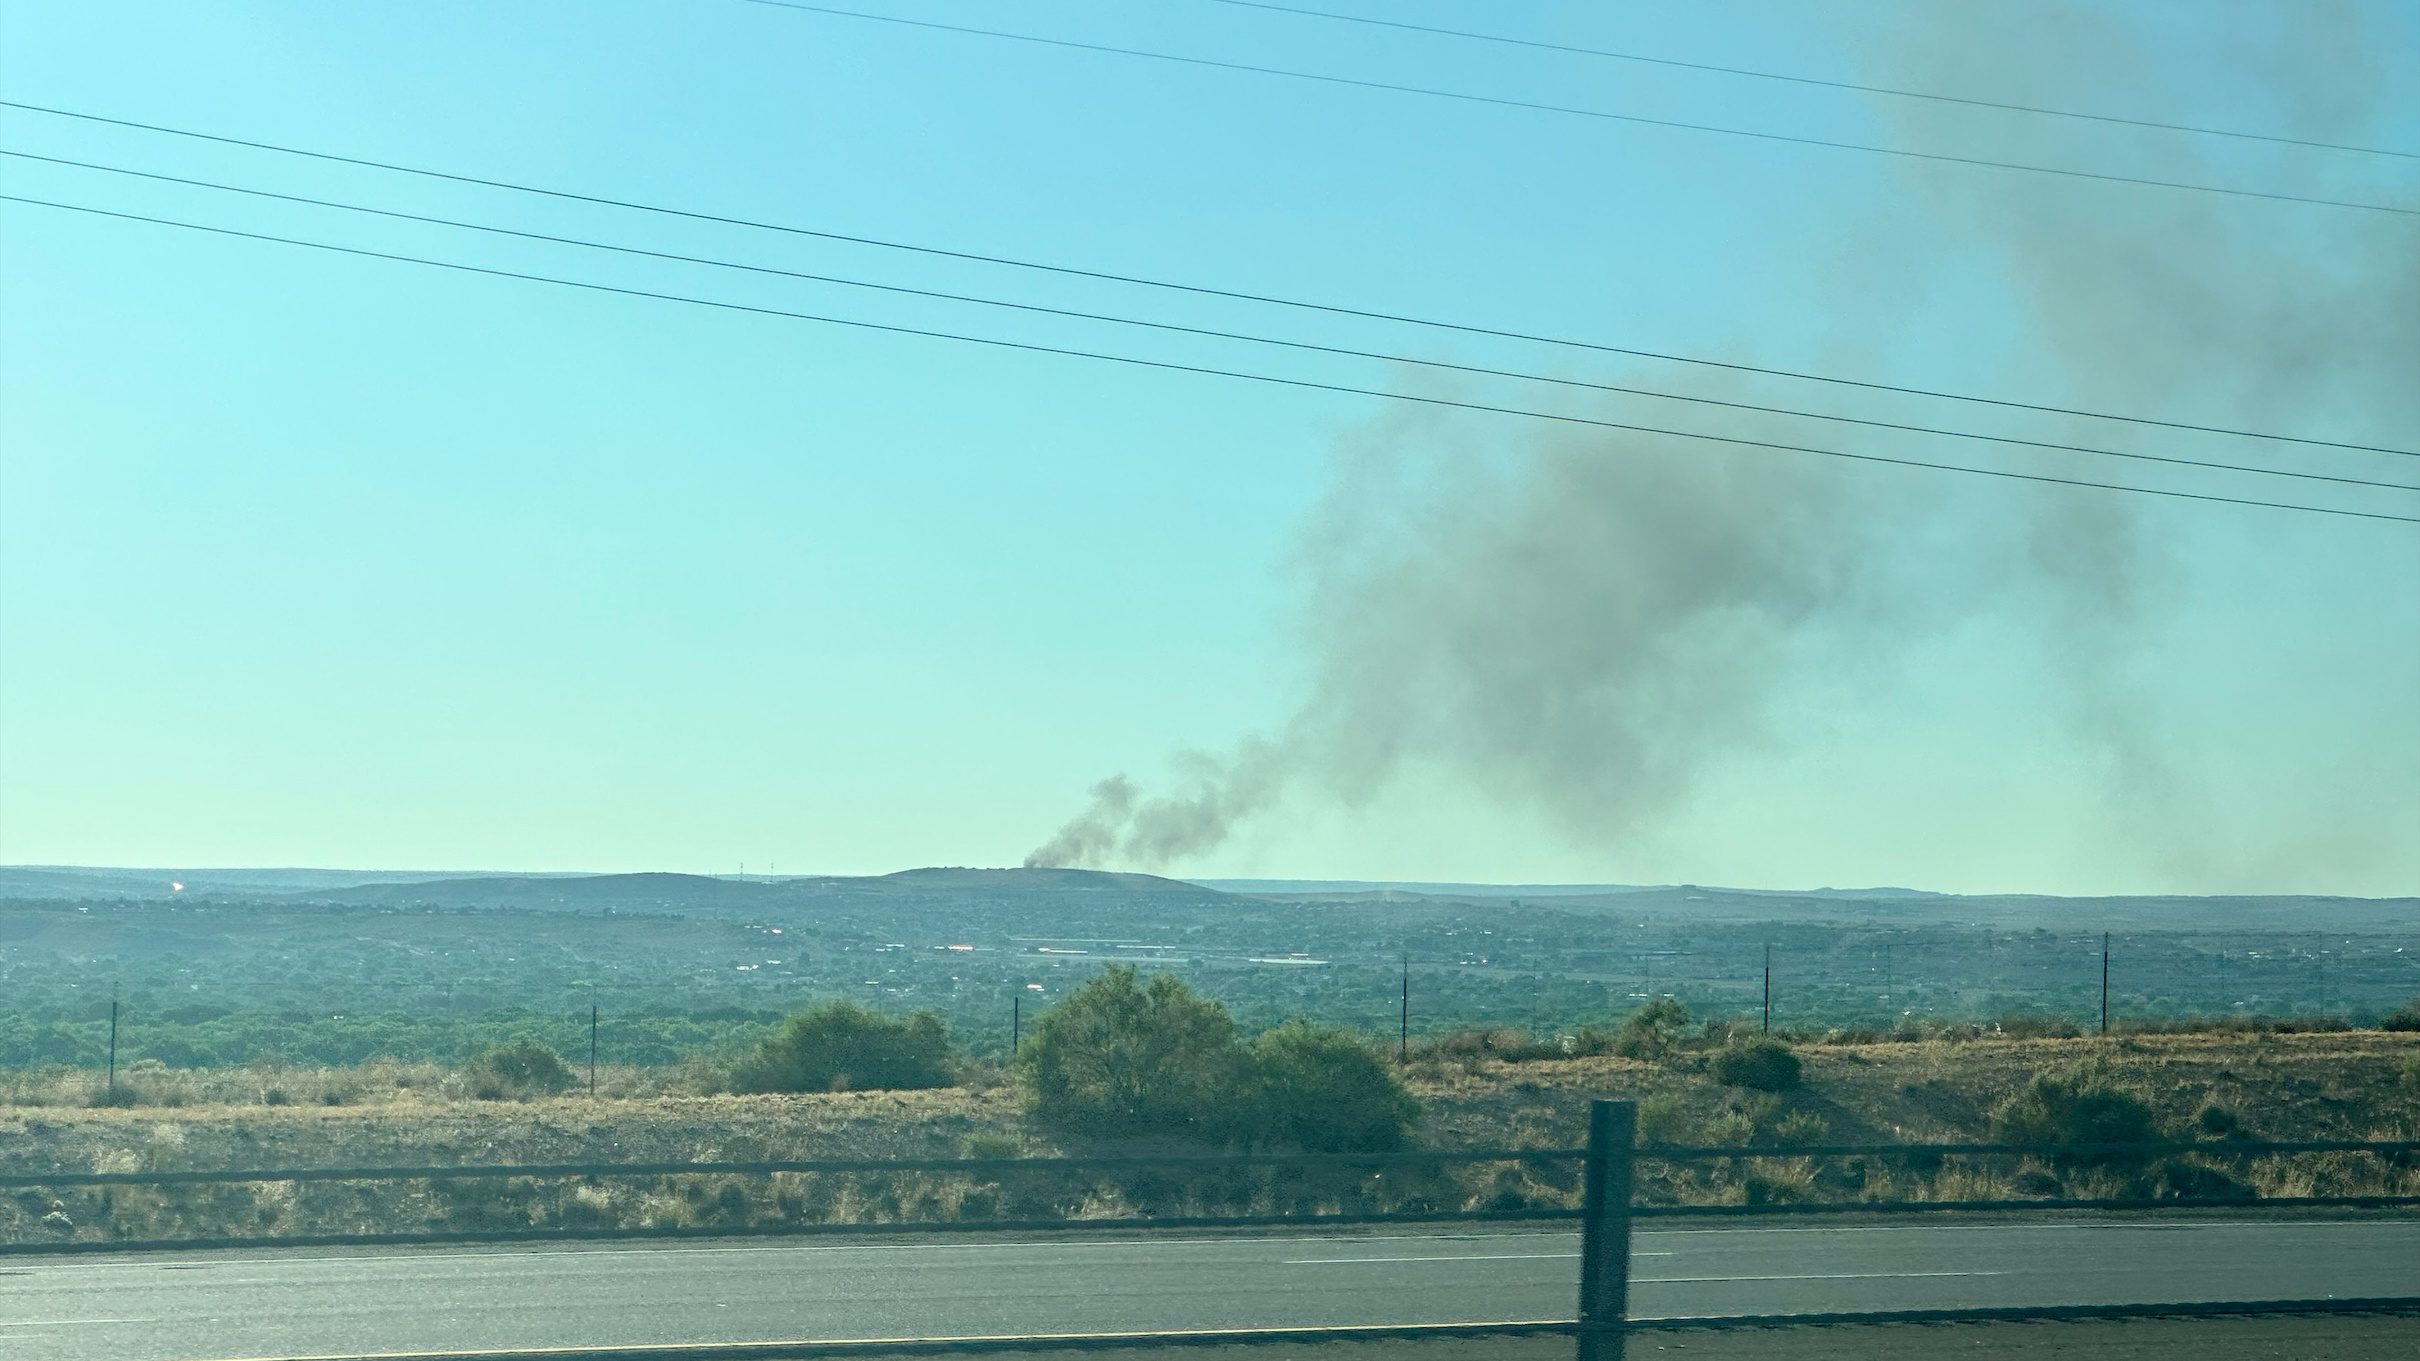 Crews respond to landfill fire in Rio Rancho